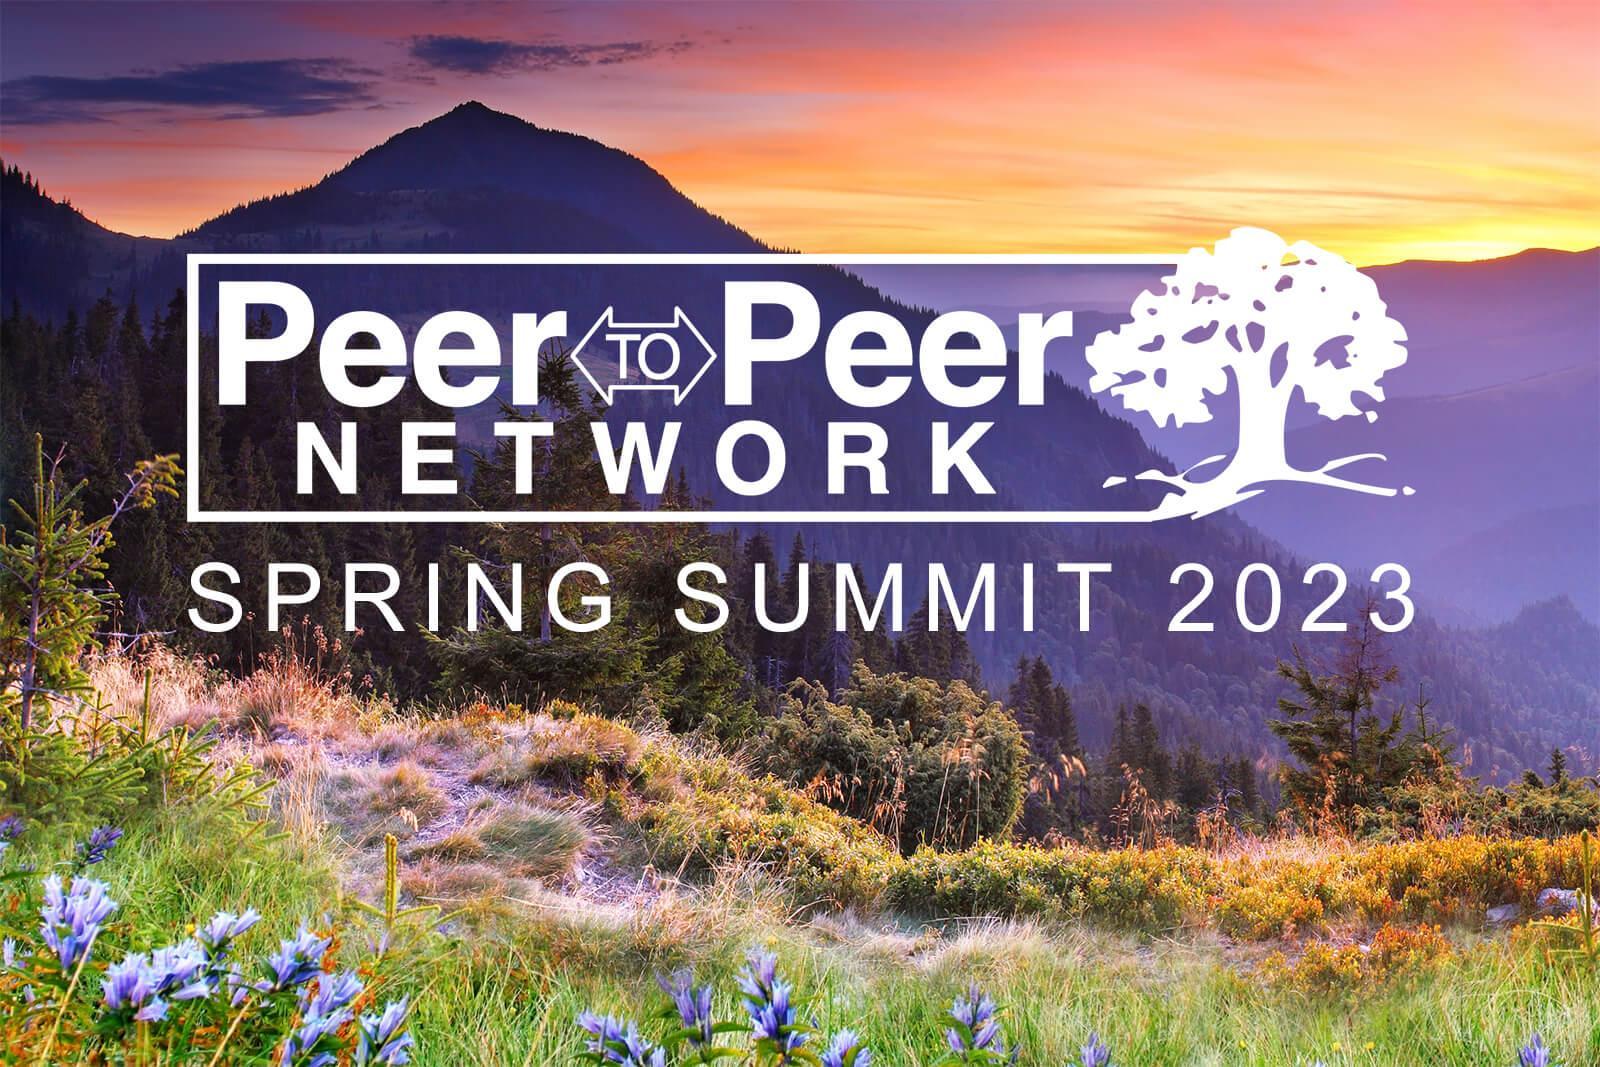 Peer to Peer Spring Summit 2023